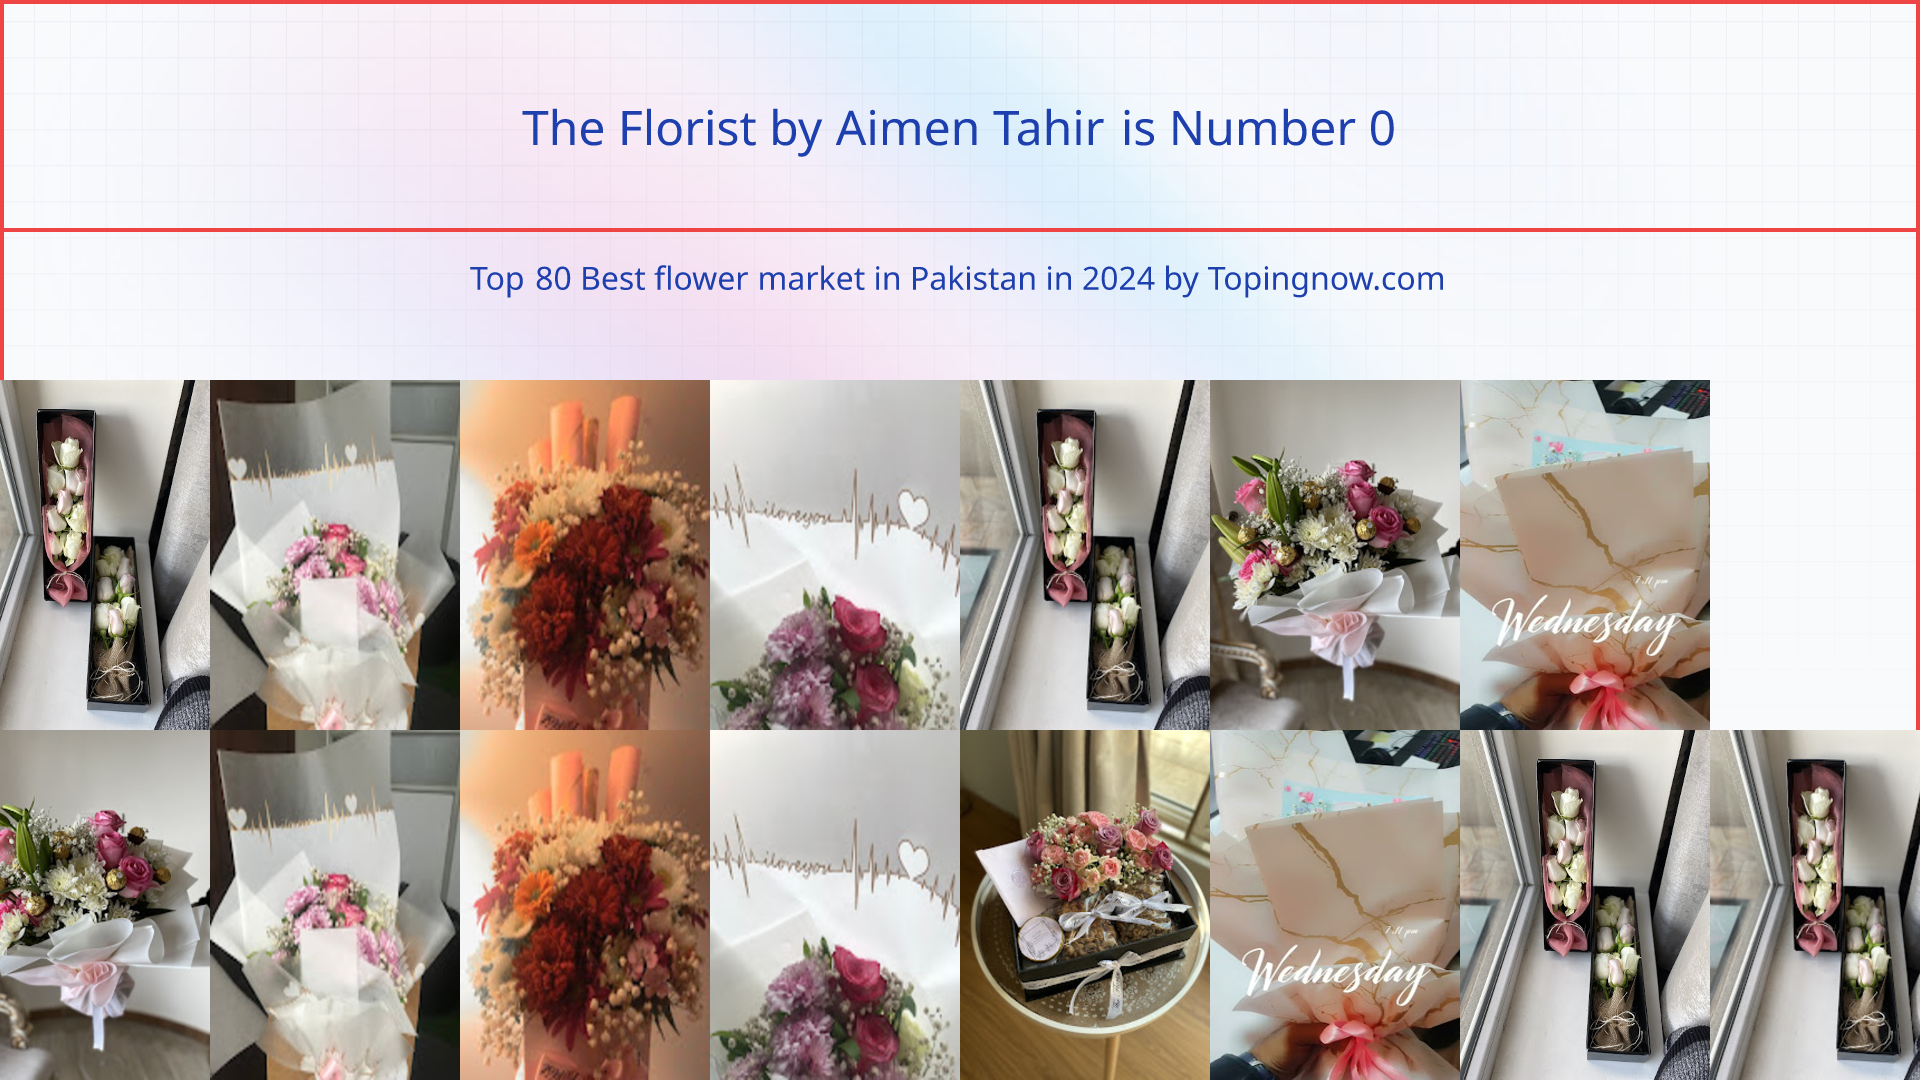 The Florist by Aimen Tahir: Top 80 Best flower market in Pakistan in 2024